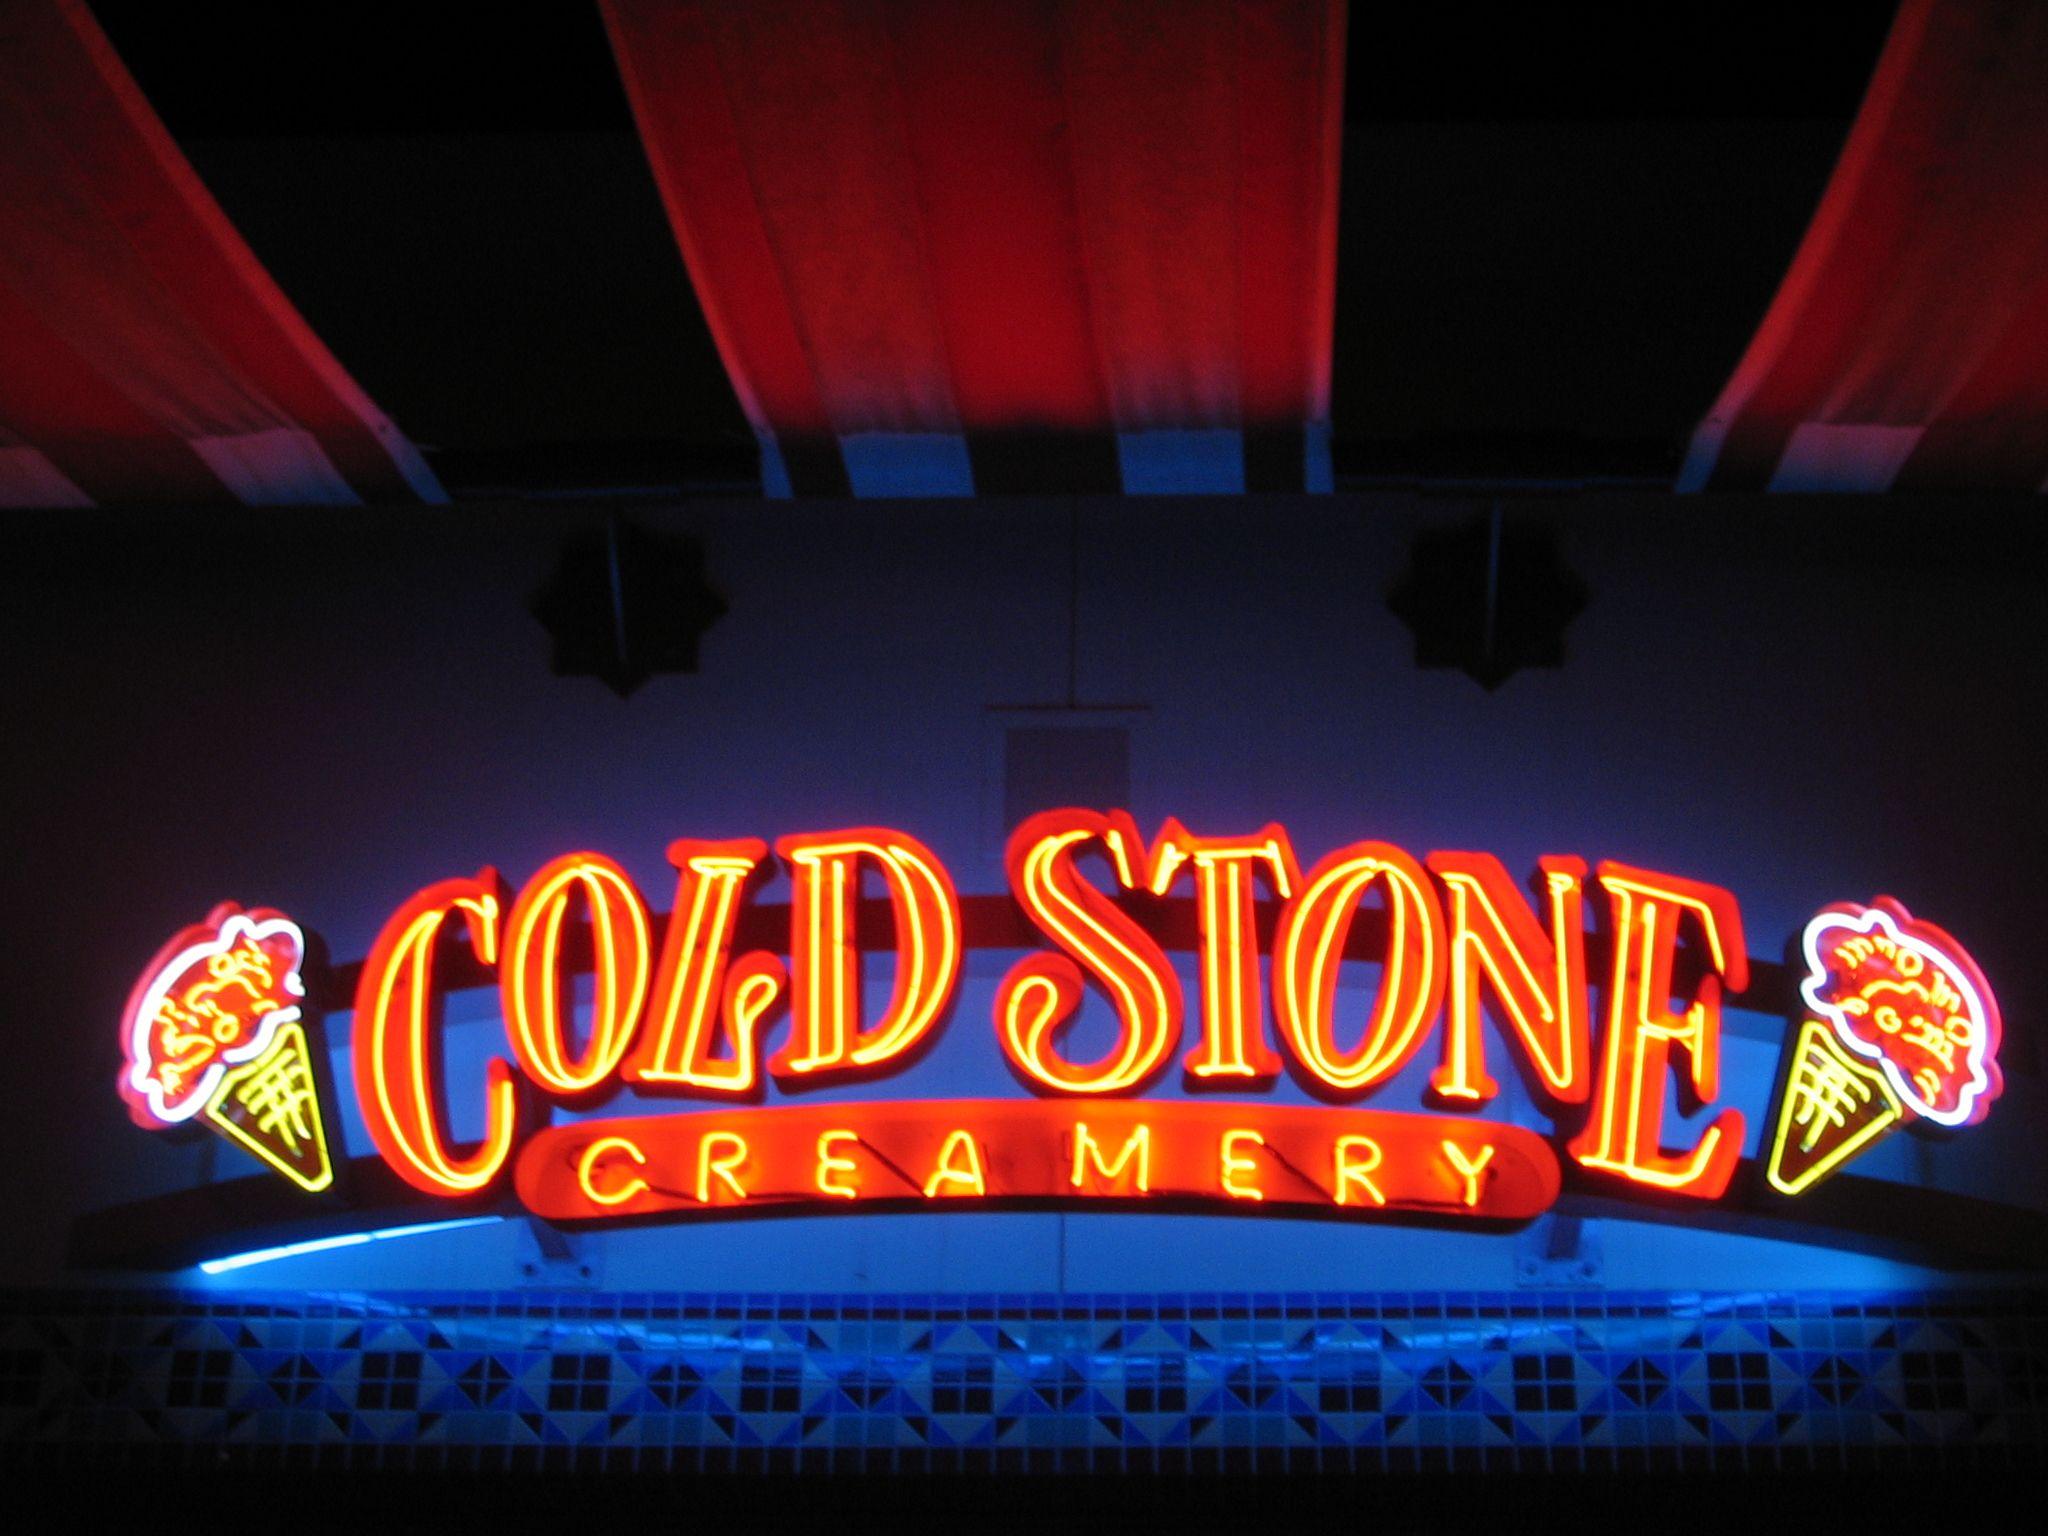 Cold Stone Logo - Cold Stone Creamery